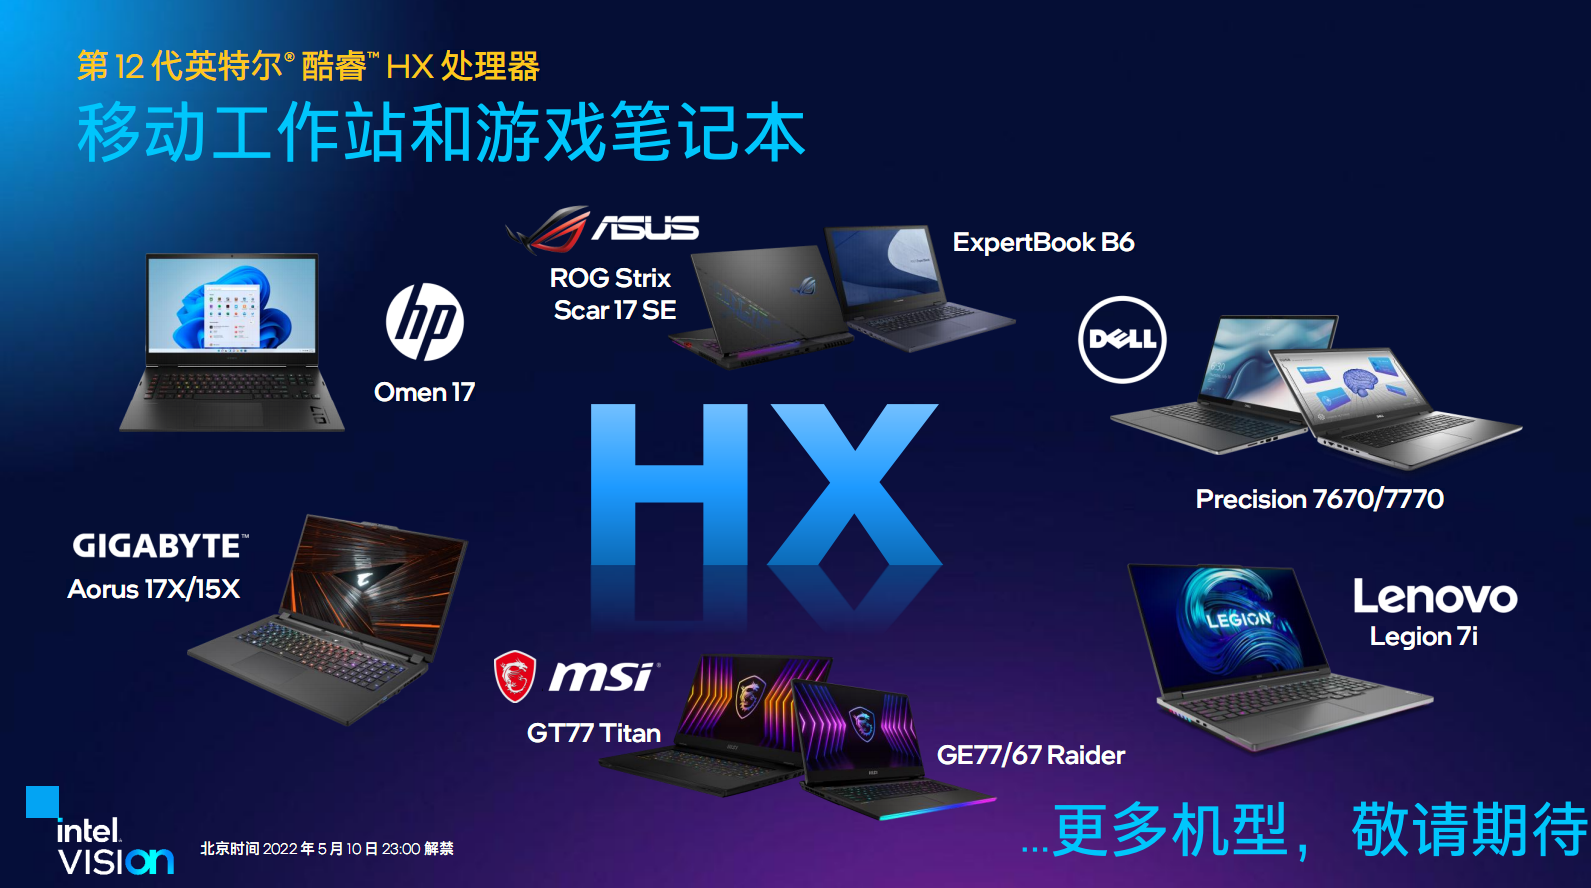 12th Gen Intel Core HX Processors 15